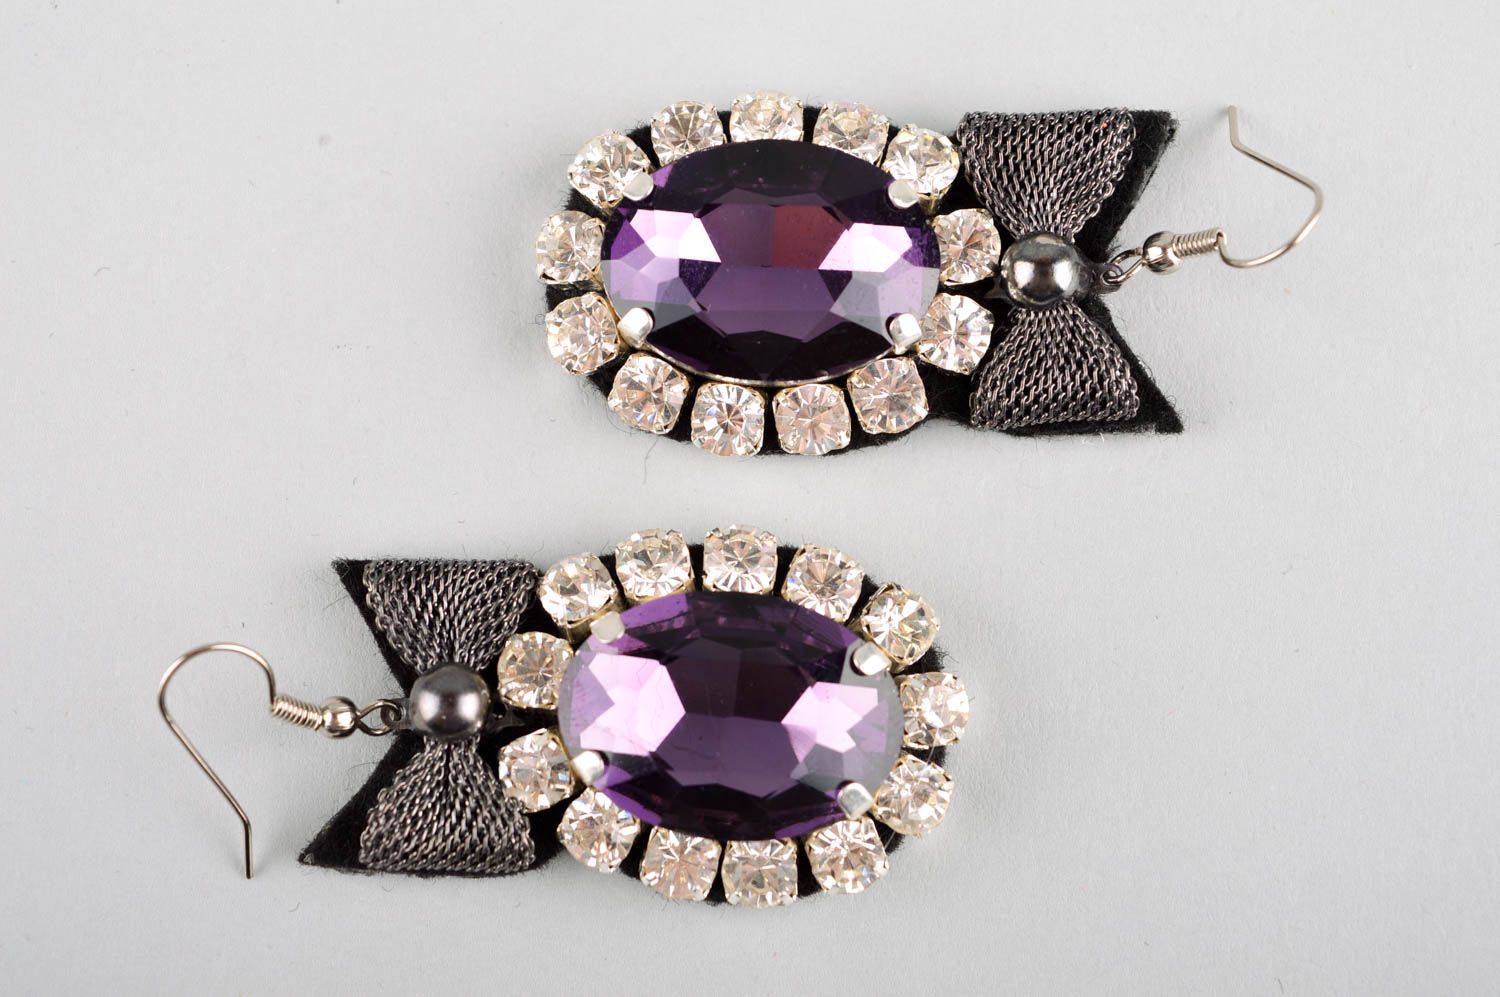 Crystal earrings fashion earrings handmade jewelry evening earrings for women photo 5